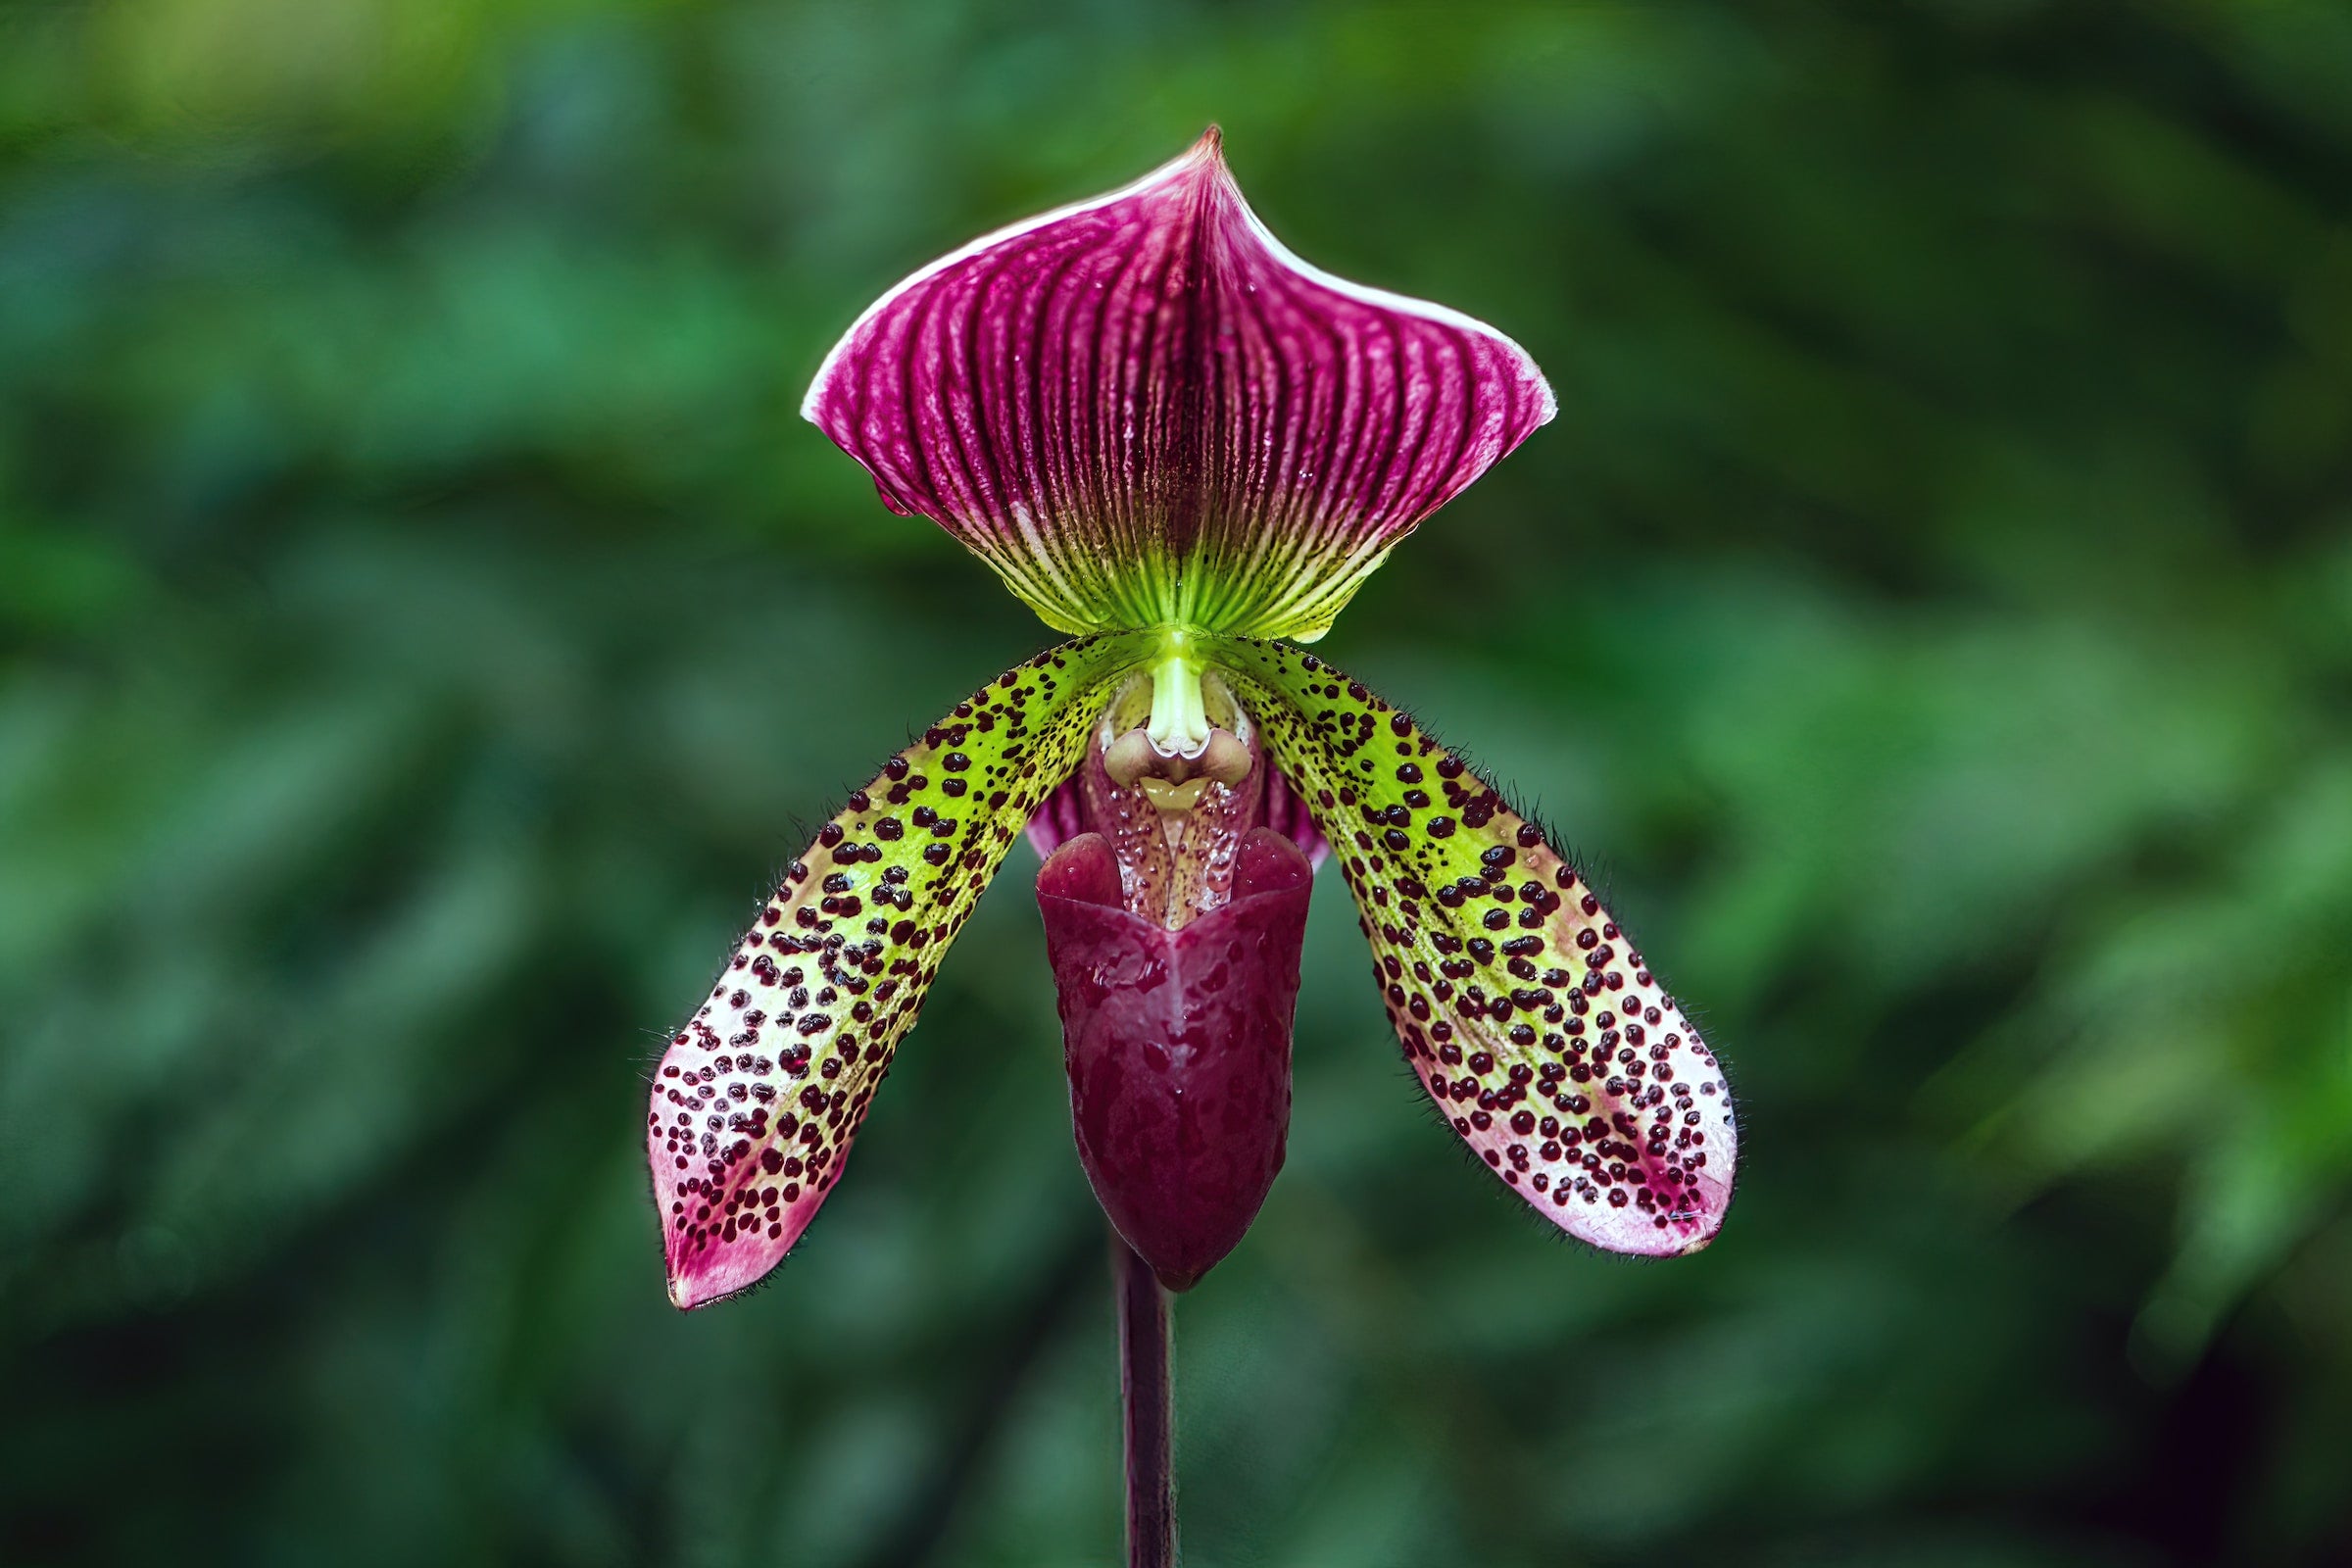 http://orchids-shop.com/cdn/shop/articles/david-clode-53l66DhOA8Q-unsplash.jpg?v=1681285922